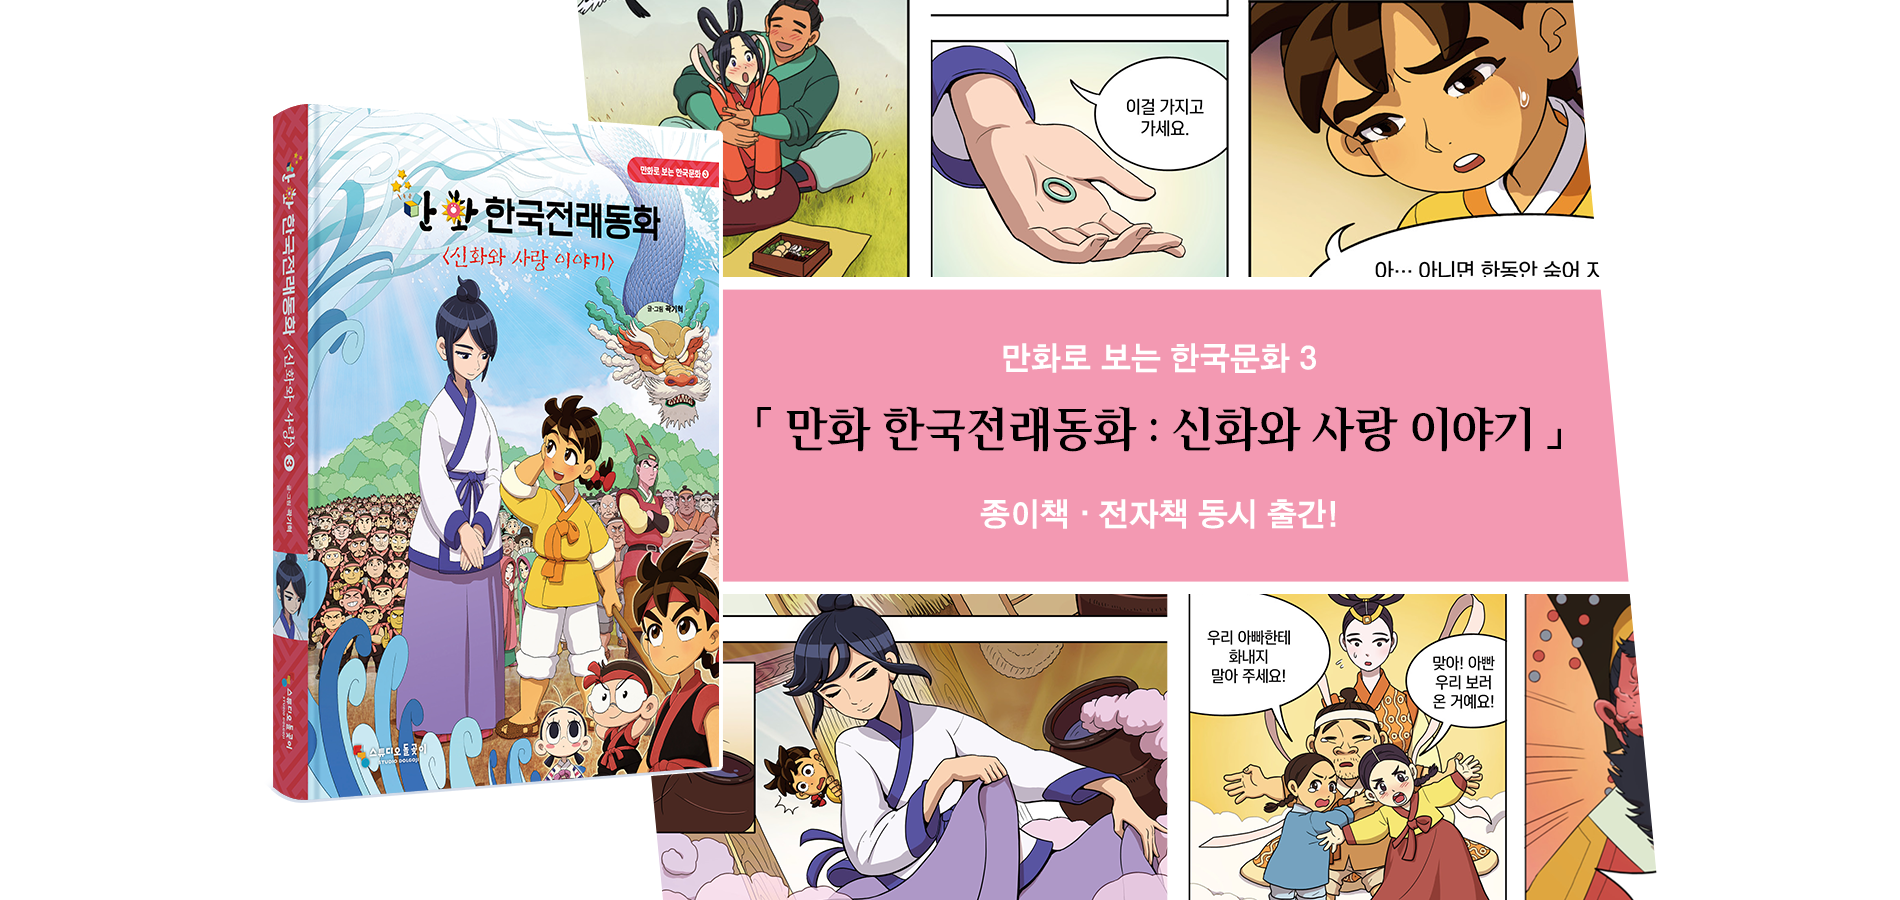 만화로 보는 한국문화 만화 한국전래동화 : 신화와 사랑 이야기 출간